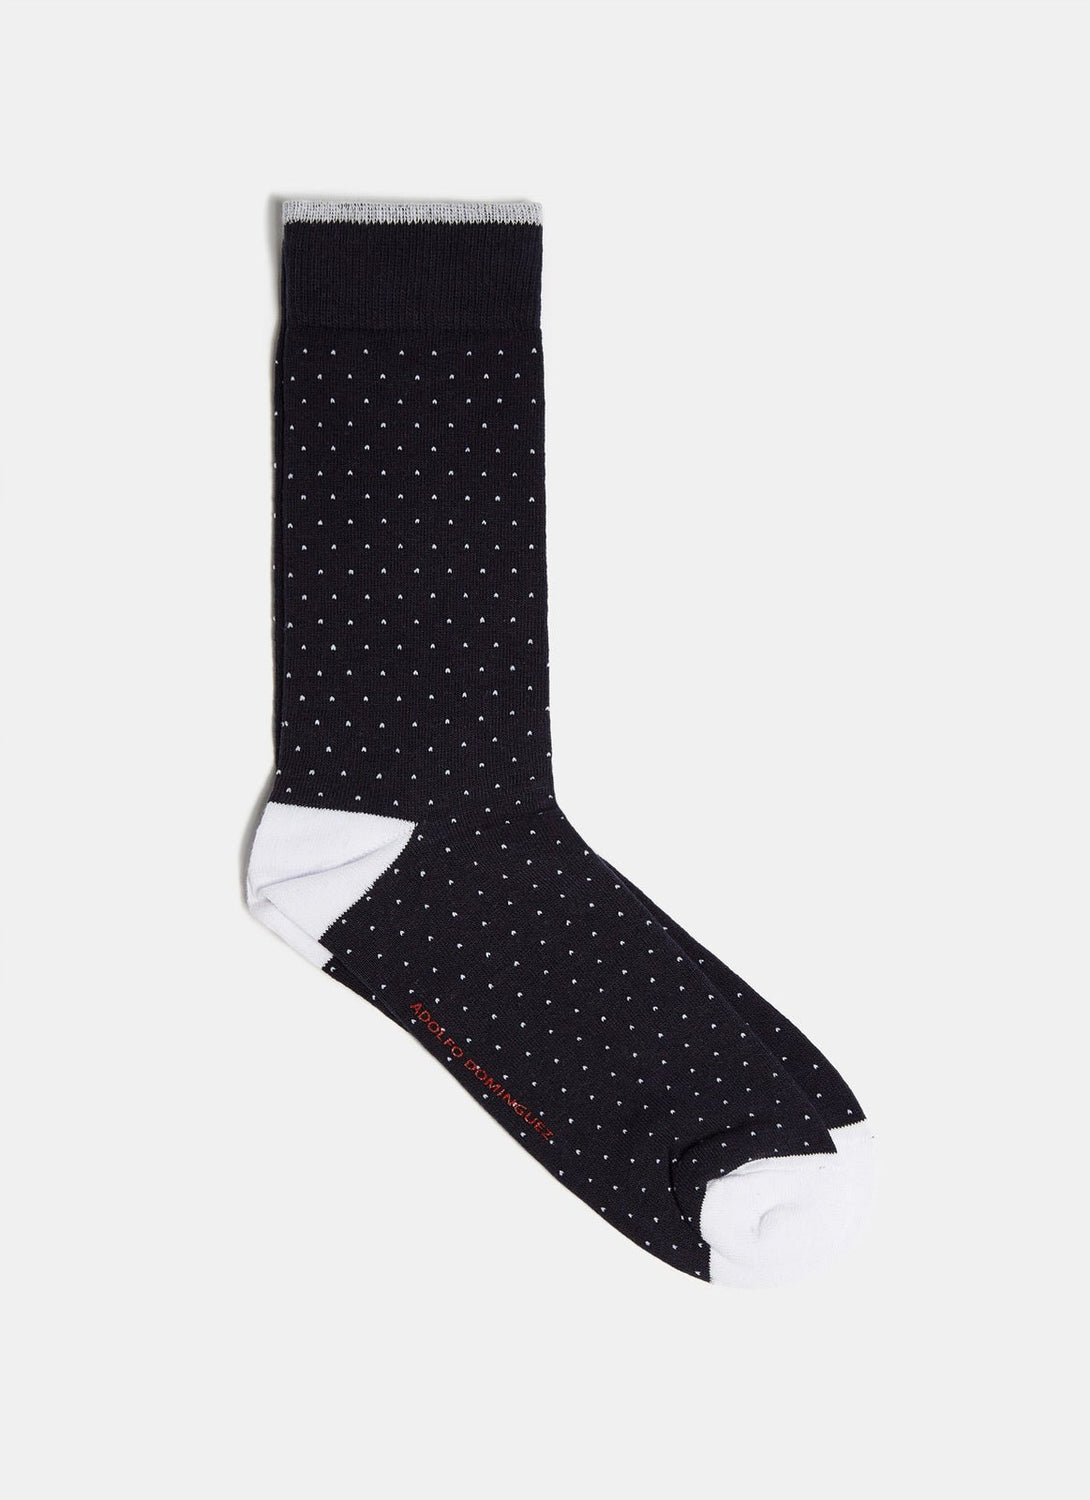 Men Socks | Pindot Print Sock by Spanish designer Adolfo Dominguez